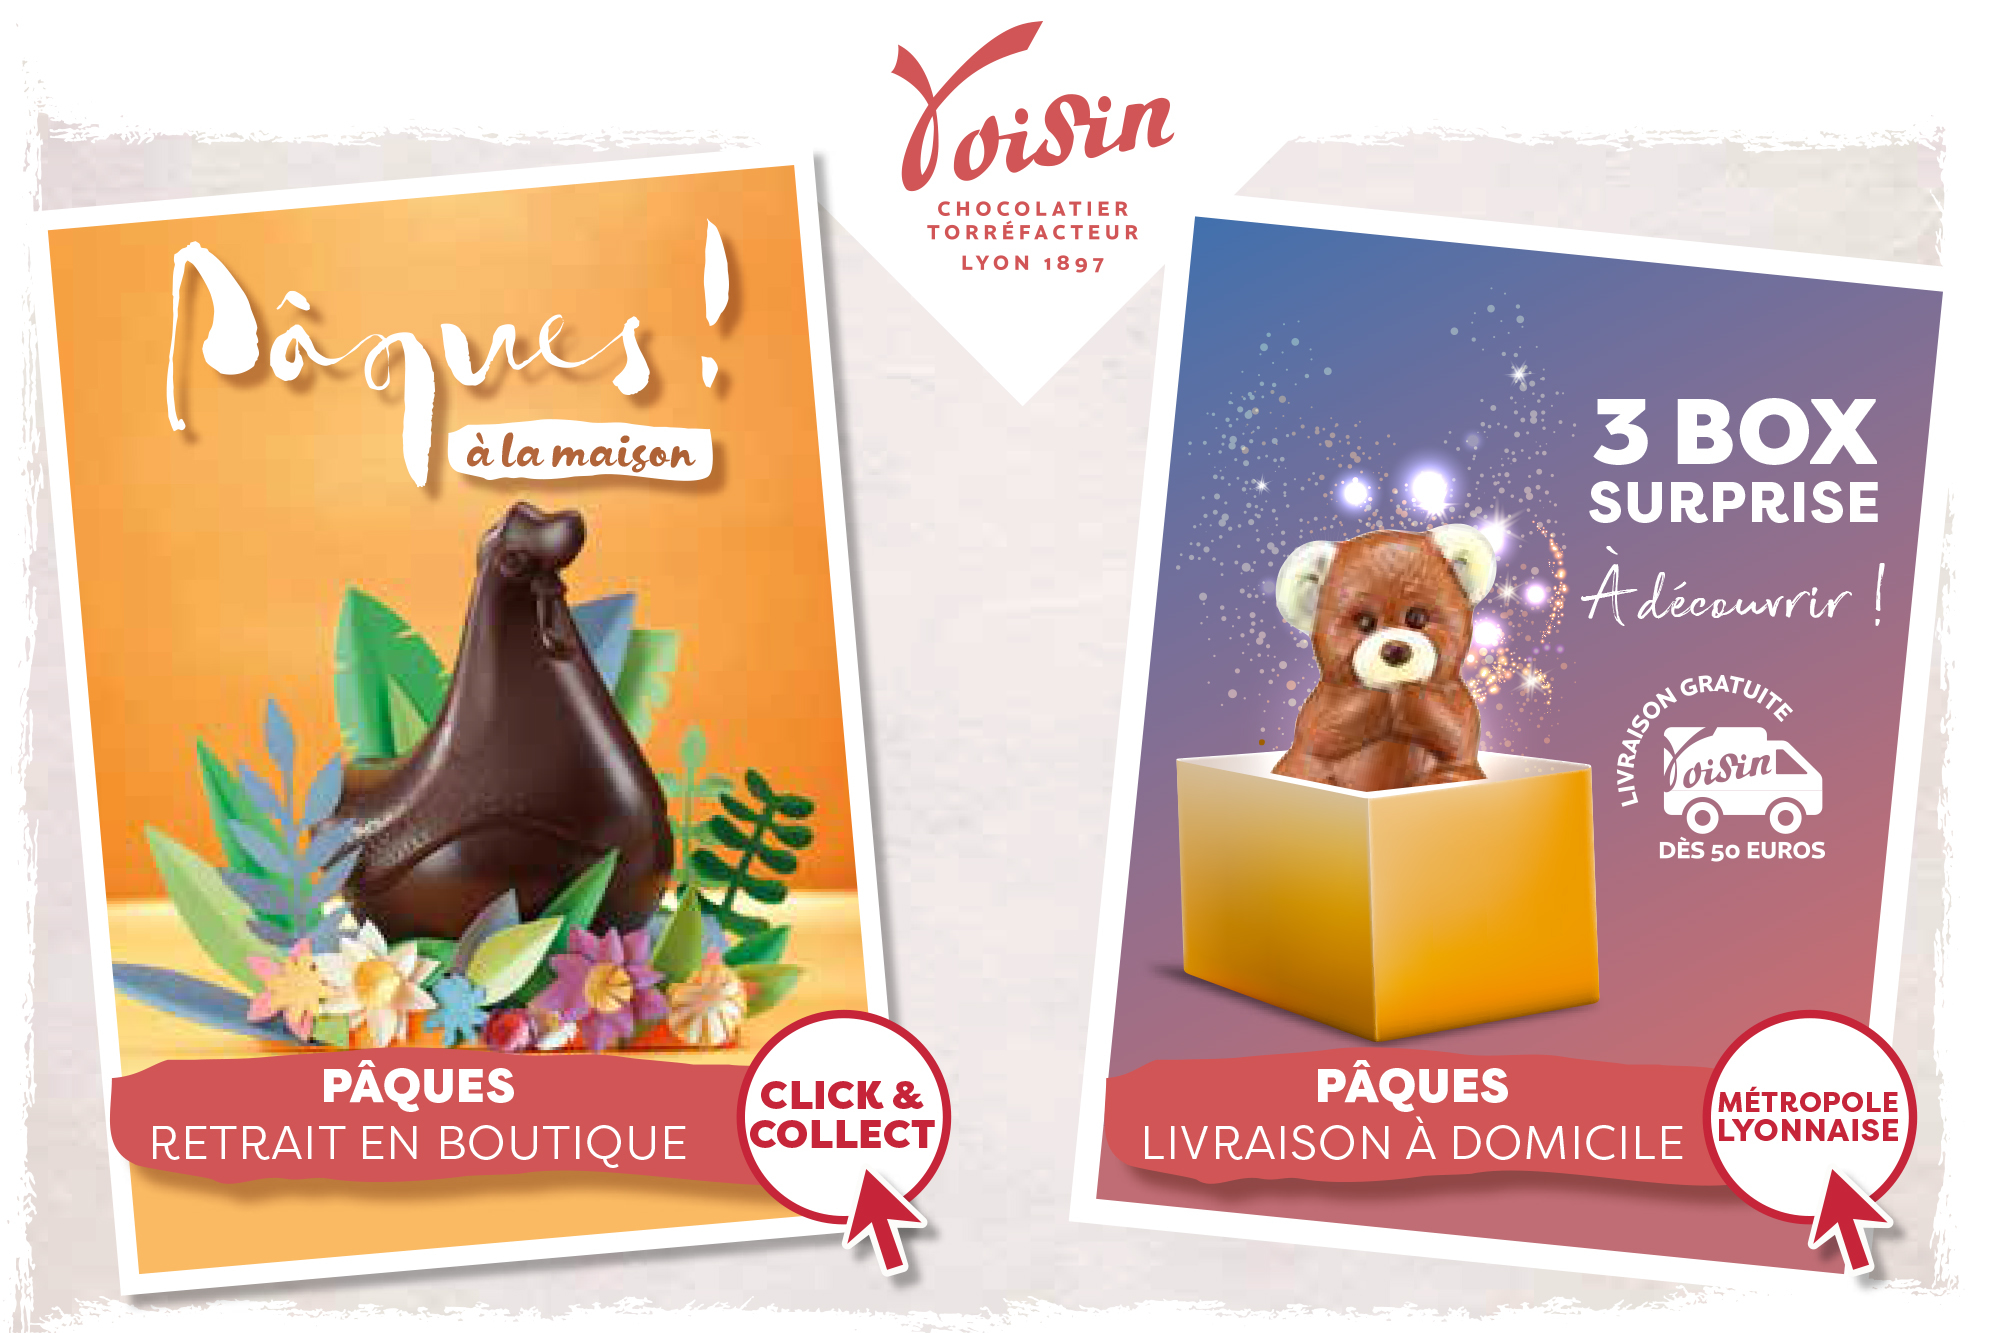 Confronté au confinement, le chocolatier Voisin a revu en urgence ses canaux de vente